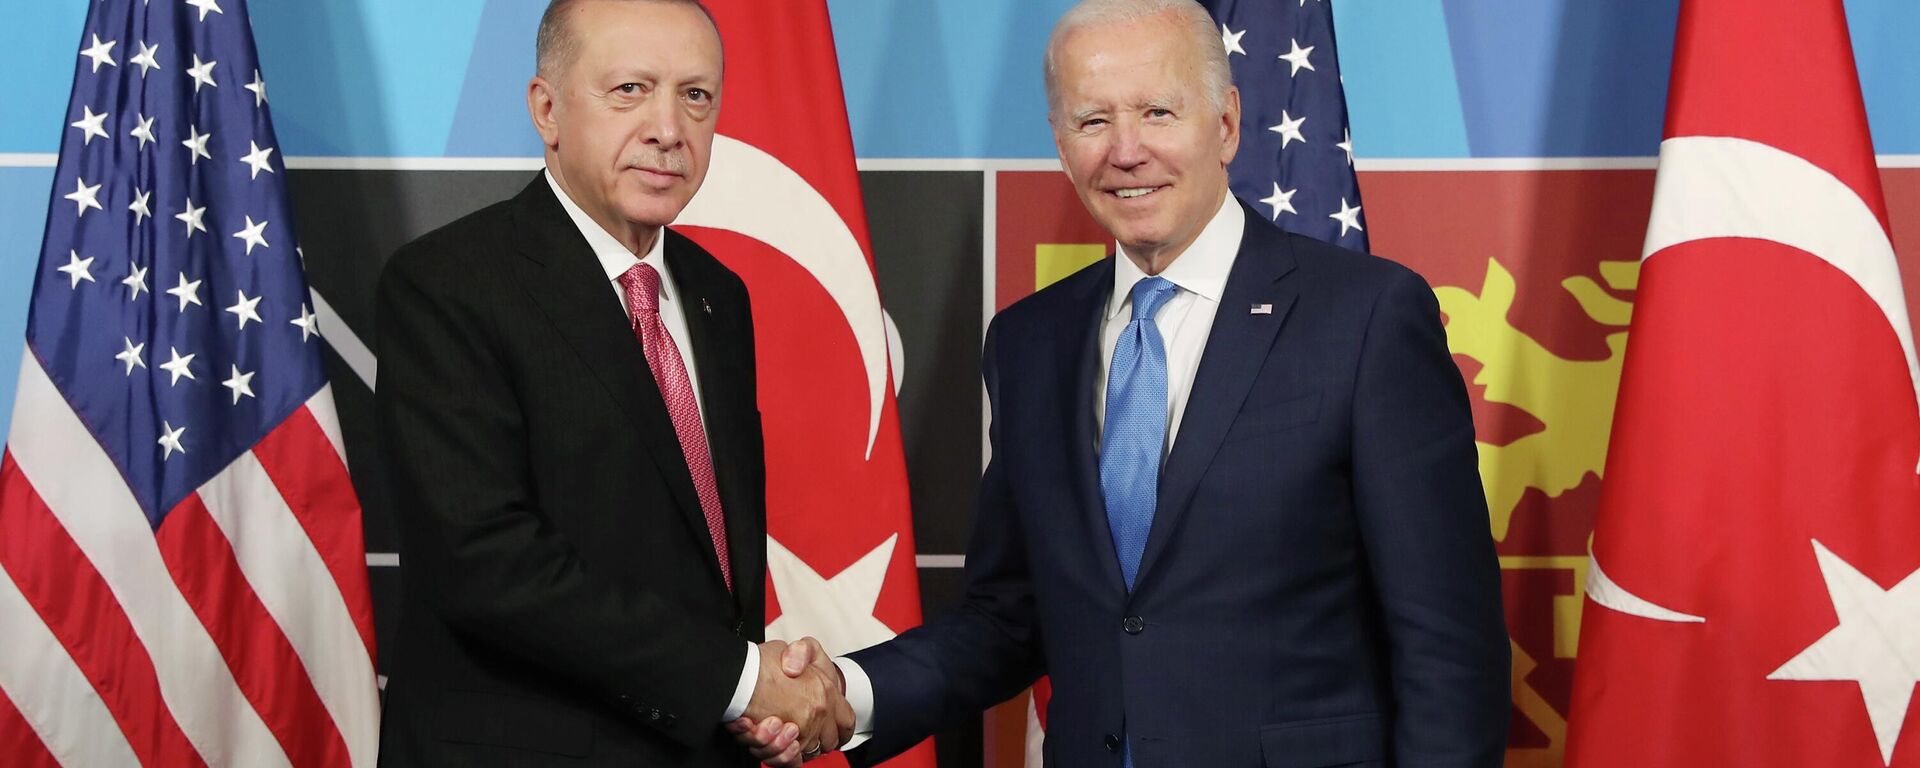 Cumhurbaşkanı Recep Tayyip Erdoğan, ABD Başkanı Joe Biden ile yapacağı görüşme öncesi yaptığı açıklamada, Ukrayna-Rusya Savaşı'nda Türkiye'nin denge politikası yürüttüğünü ifade etti. ABD Başkanı Joe Biden ise, Türkiye'nin Finlandiya ve İsveç'in NATO üyeliğine verdiği destek için Cumhurbaşkanı Erdoğan'a teşekkür etti. - Sputnik Türkiye, 1920, 29.05.2023